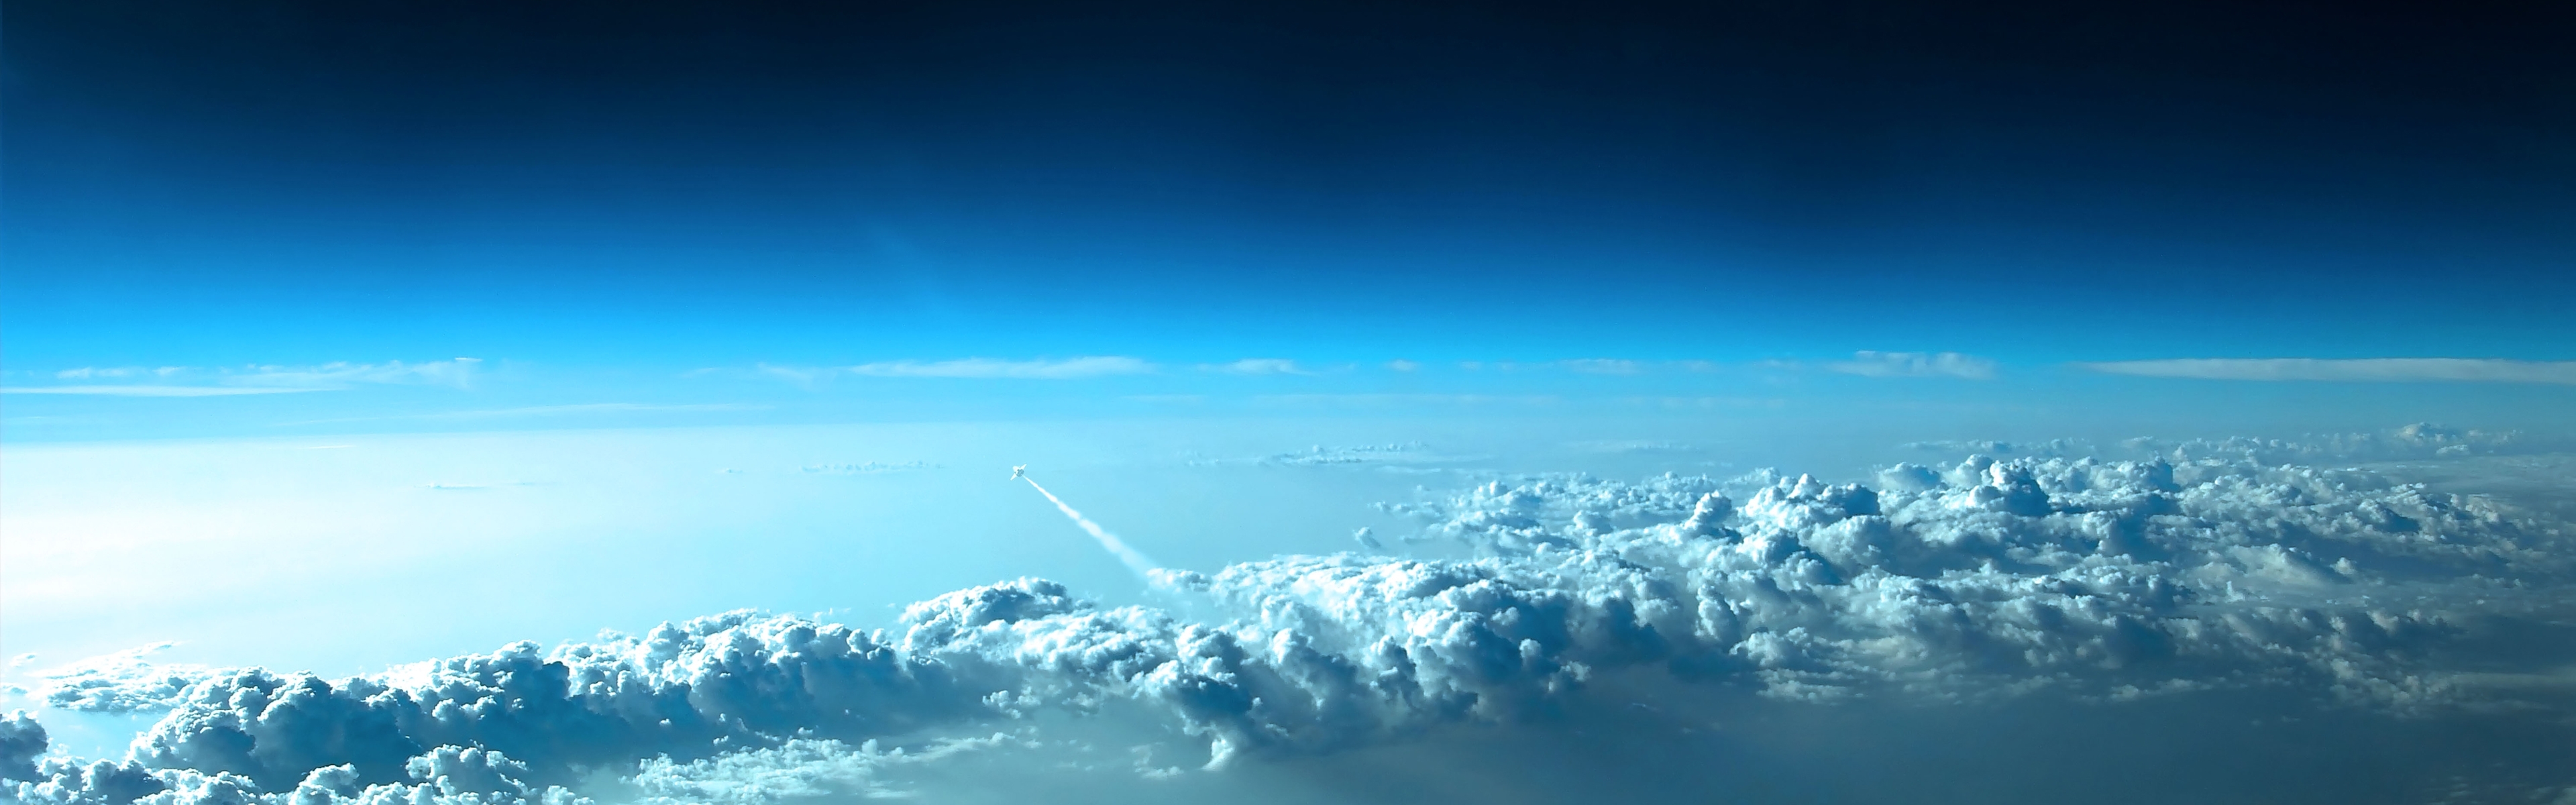 Скачать обои бесплатно Облака, Небо, Пейзаж, Космос картинка на рабочий стол ПК